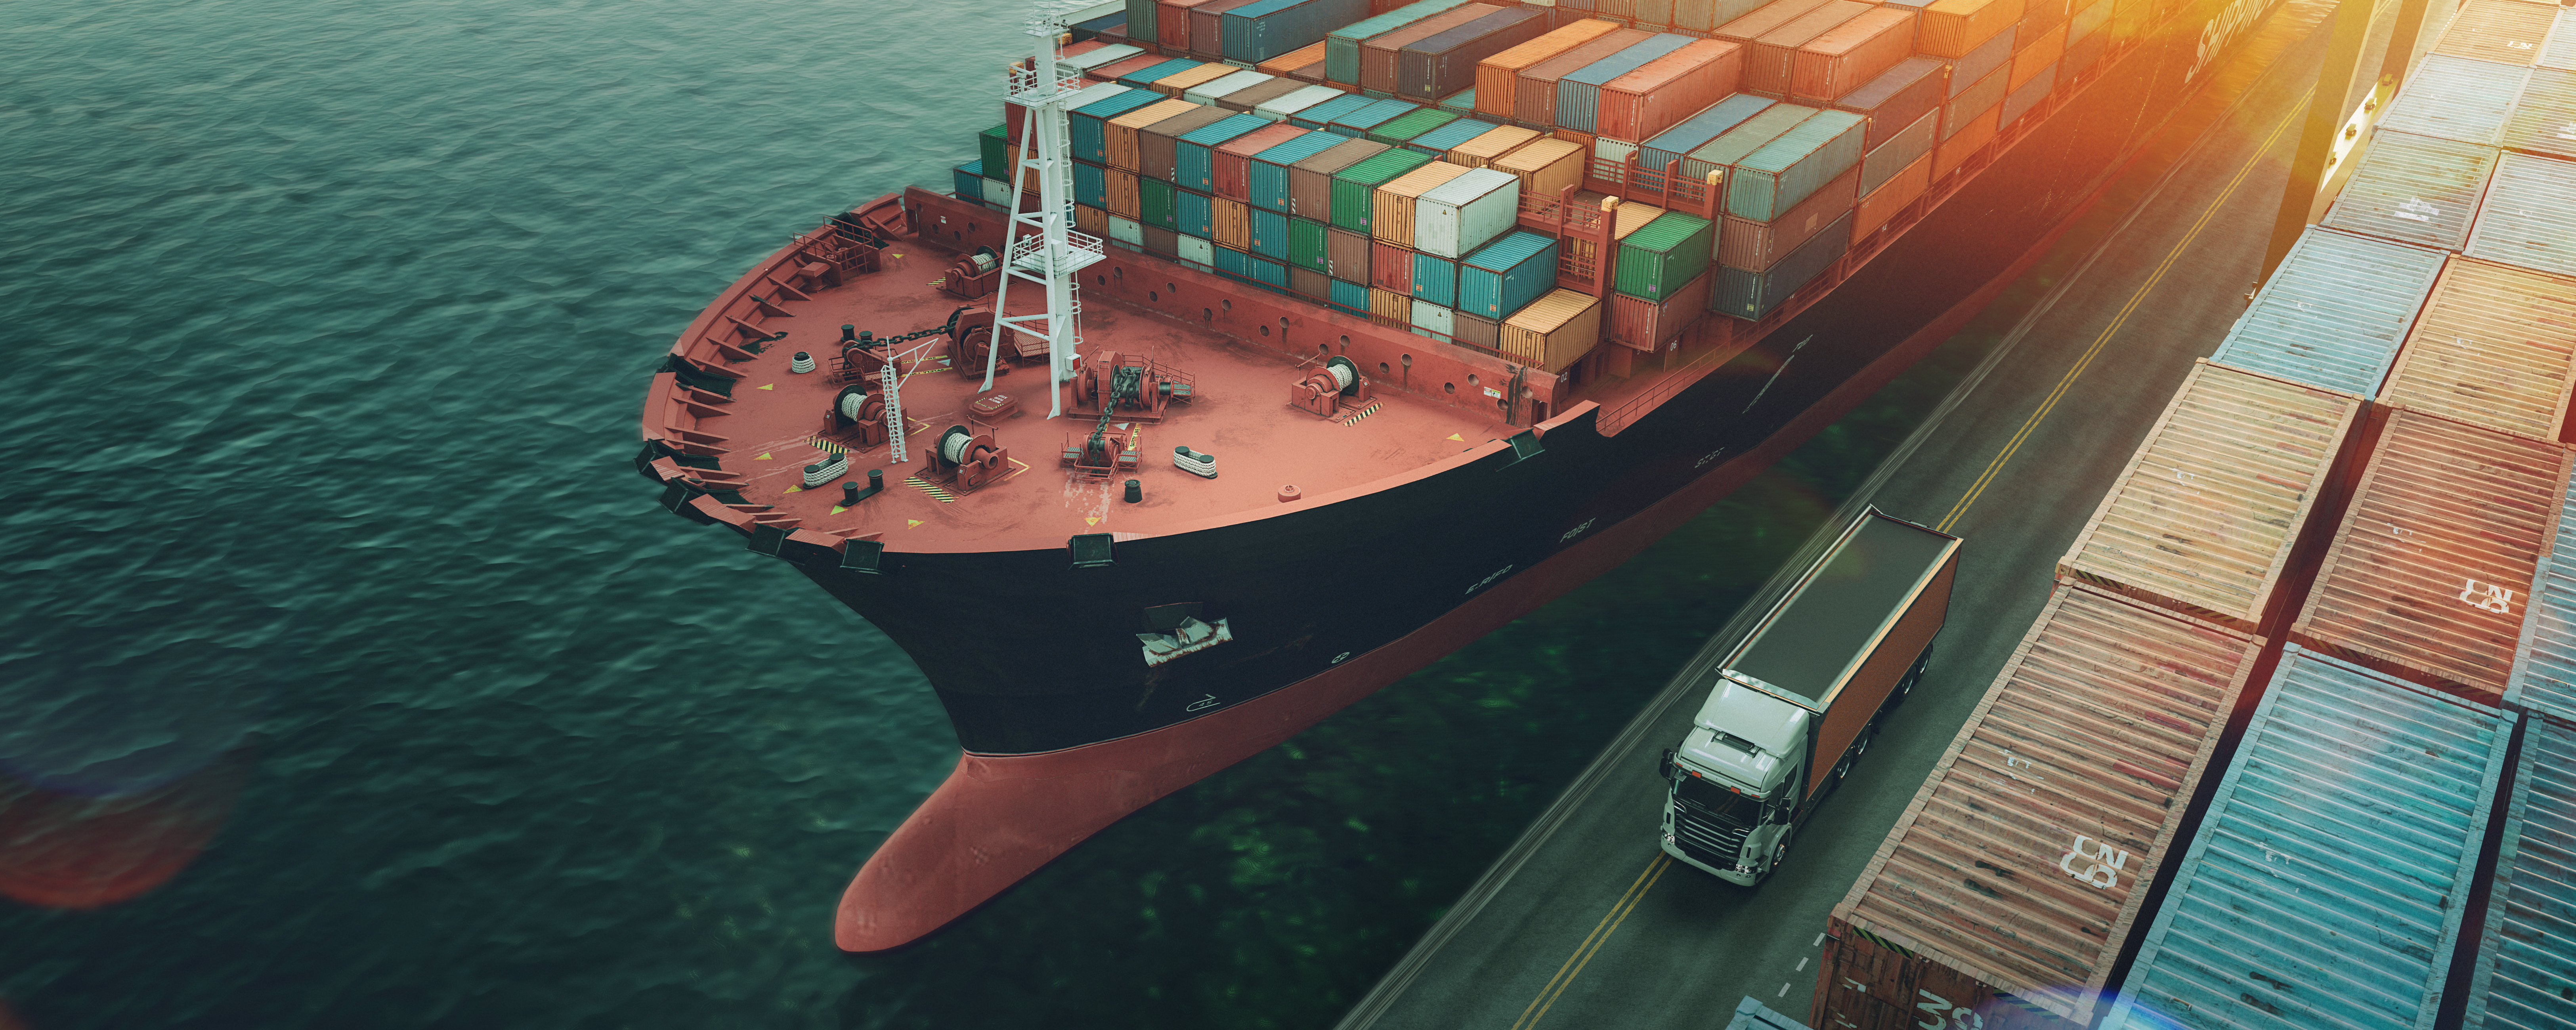 Transport und Logistik von Containerfrachtschiffen und Frachtflugzeugen.3D-Rendering und Illustration.